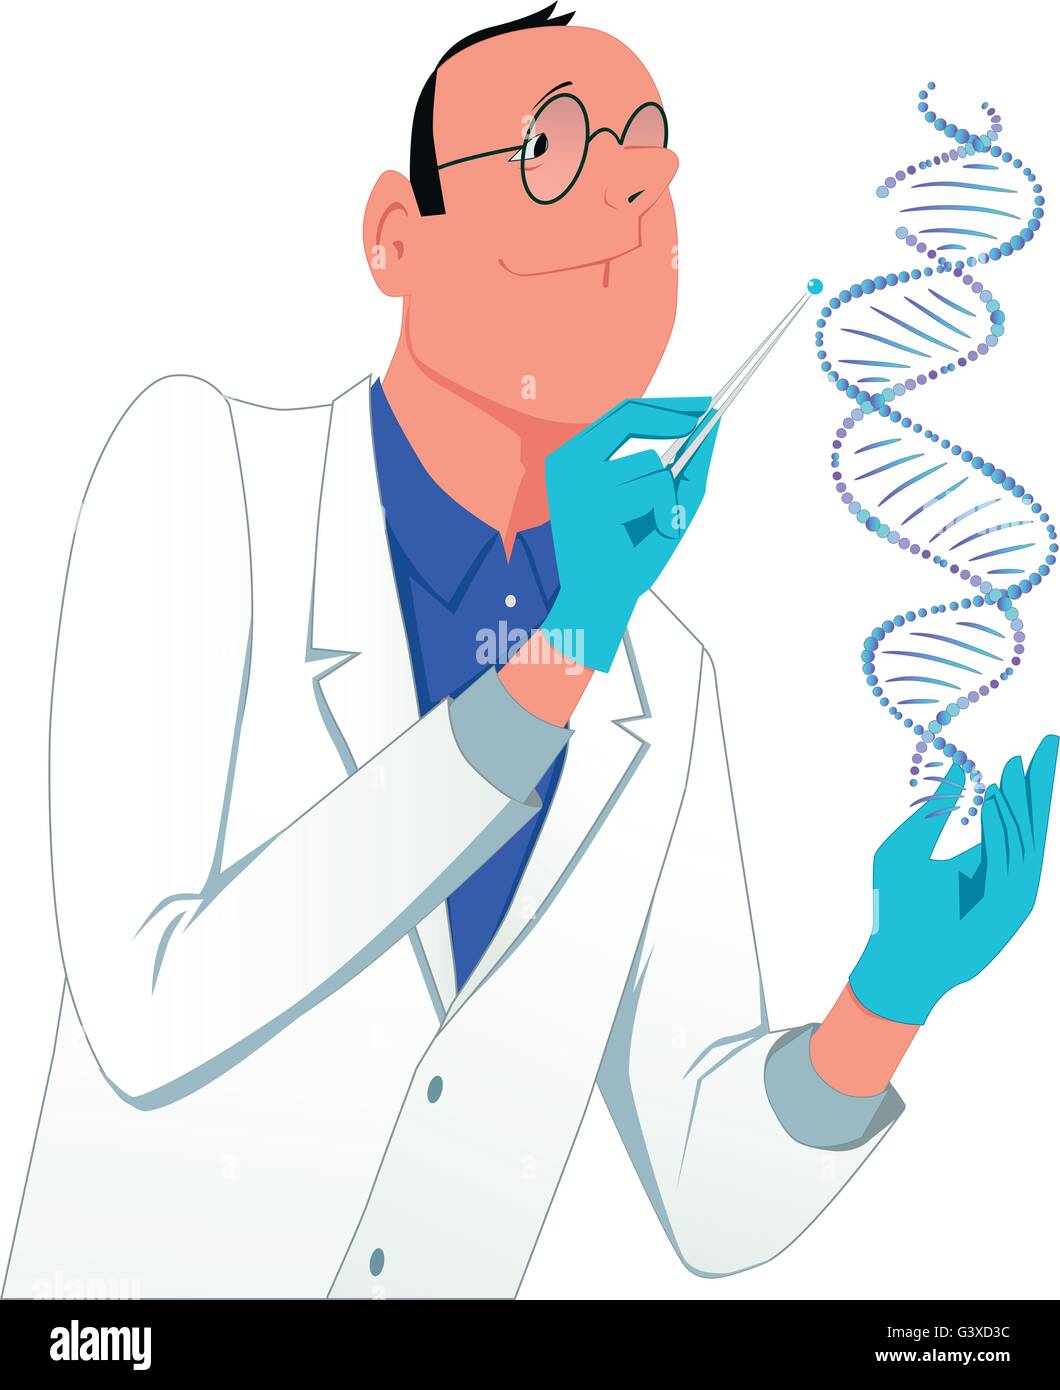 La ingeniería genética. Un hombre en una bata de laboratorio de modificación de una molécula de ADN, vectores cartoon, aislado en blanco Ilustración del Vector